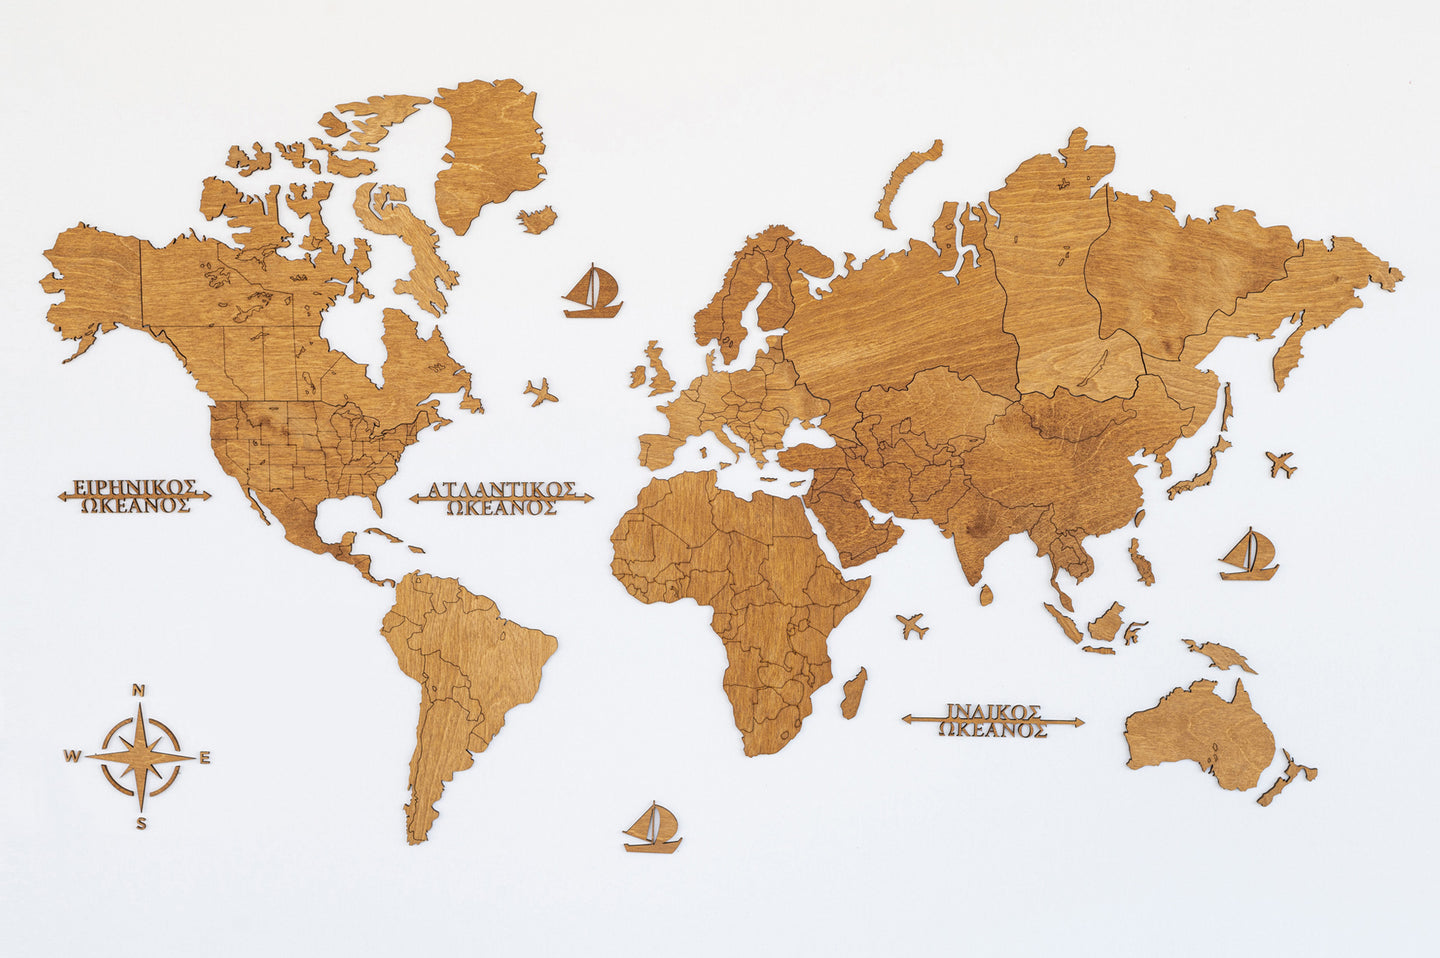 Ξύλινος παγκόσμιος χάρτης τοίχου ΔΡΥΣ - (115 x 65) / Κενός